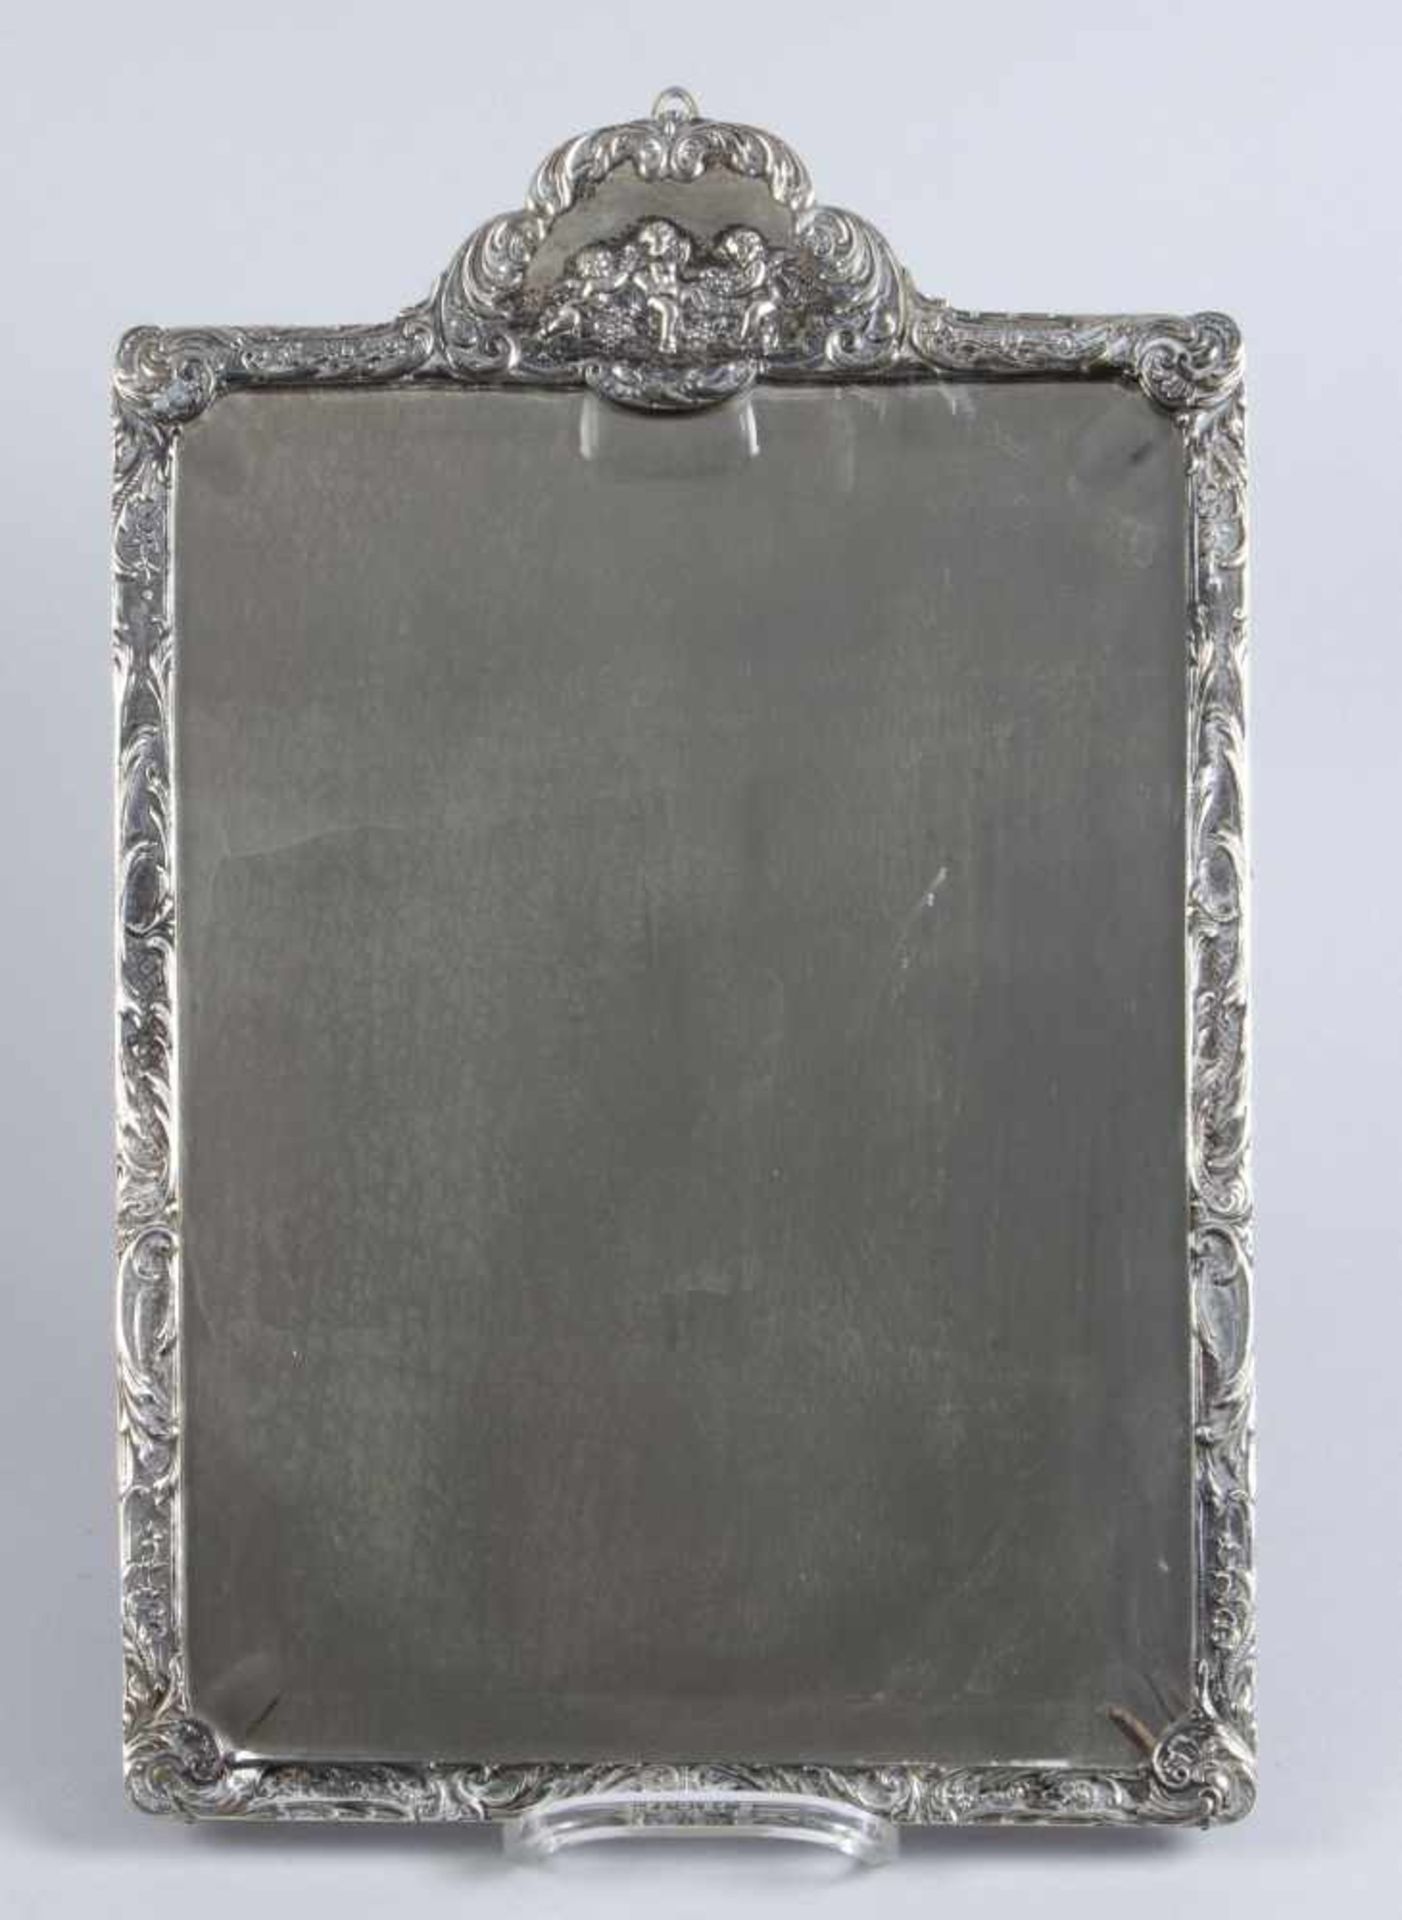 WandspiegelRahmung aus Silber 800. Putten- und Rankendekor. Firmensignet. Deutsch. 41 x 28 cm.- - -